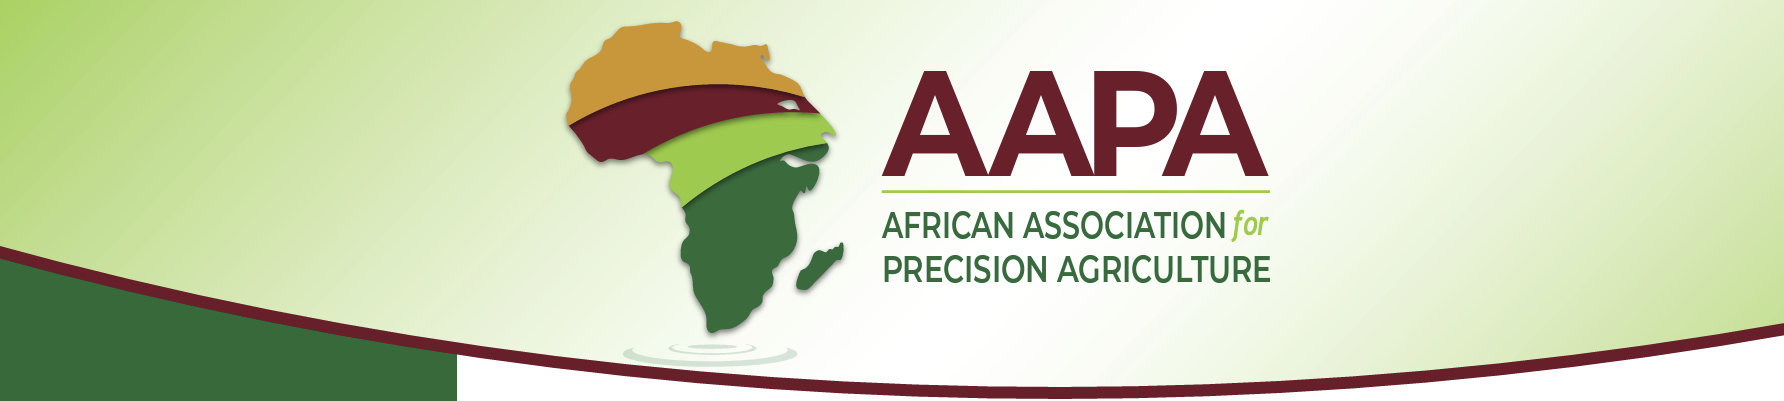 AAPA Newsletter Banner